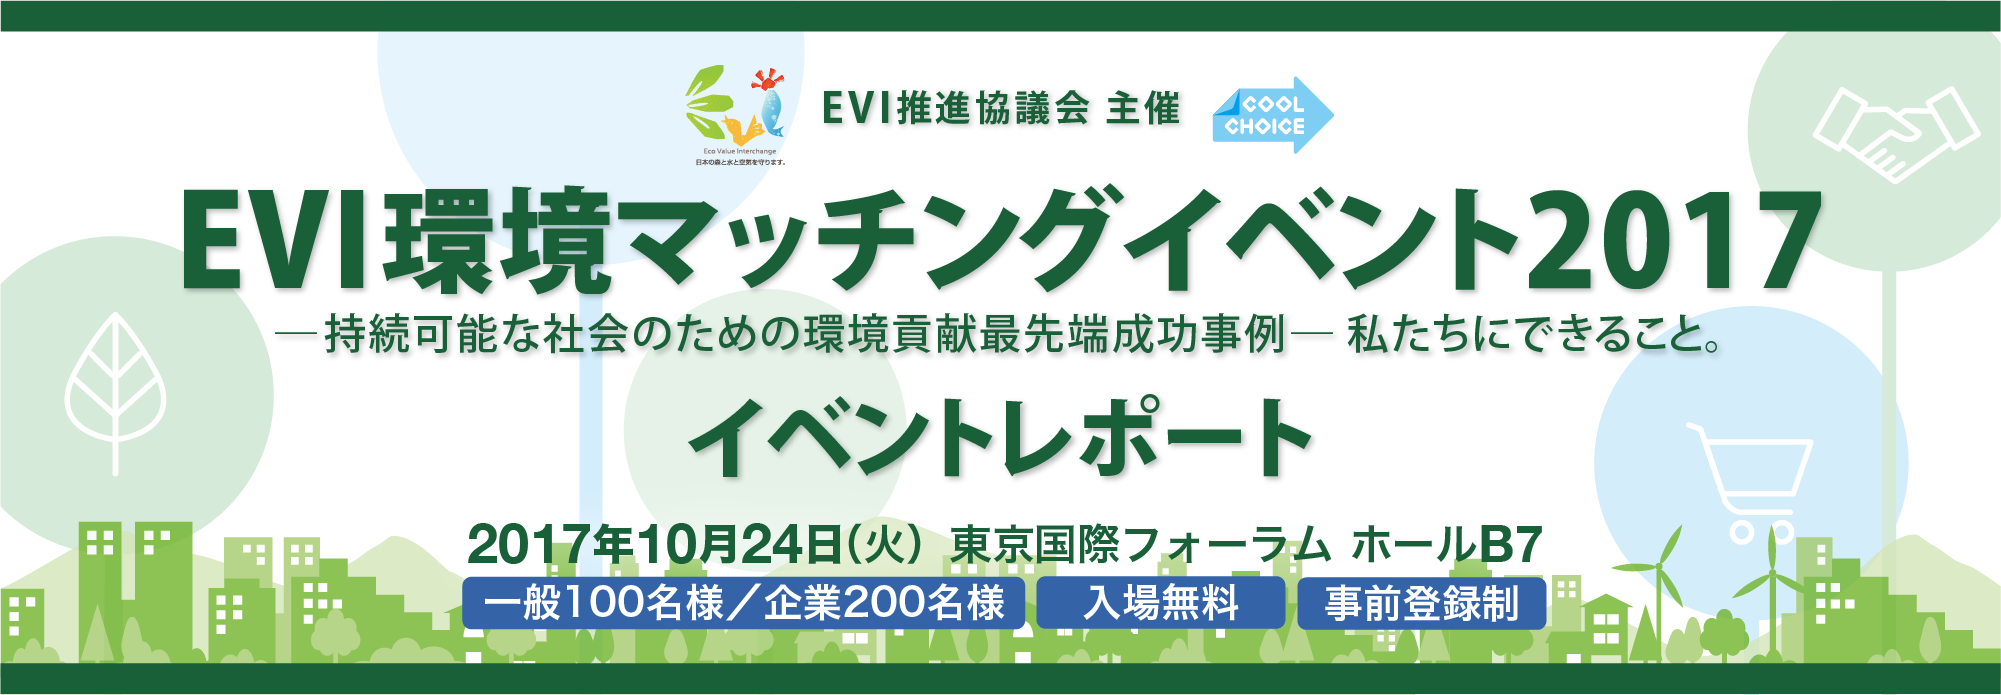 EVI環境マッチングイベント2017 イベントレポート 